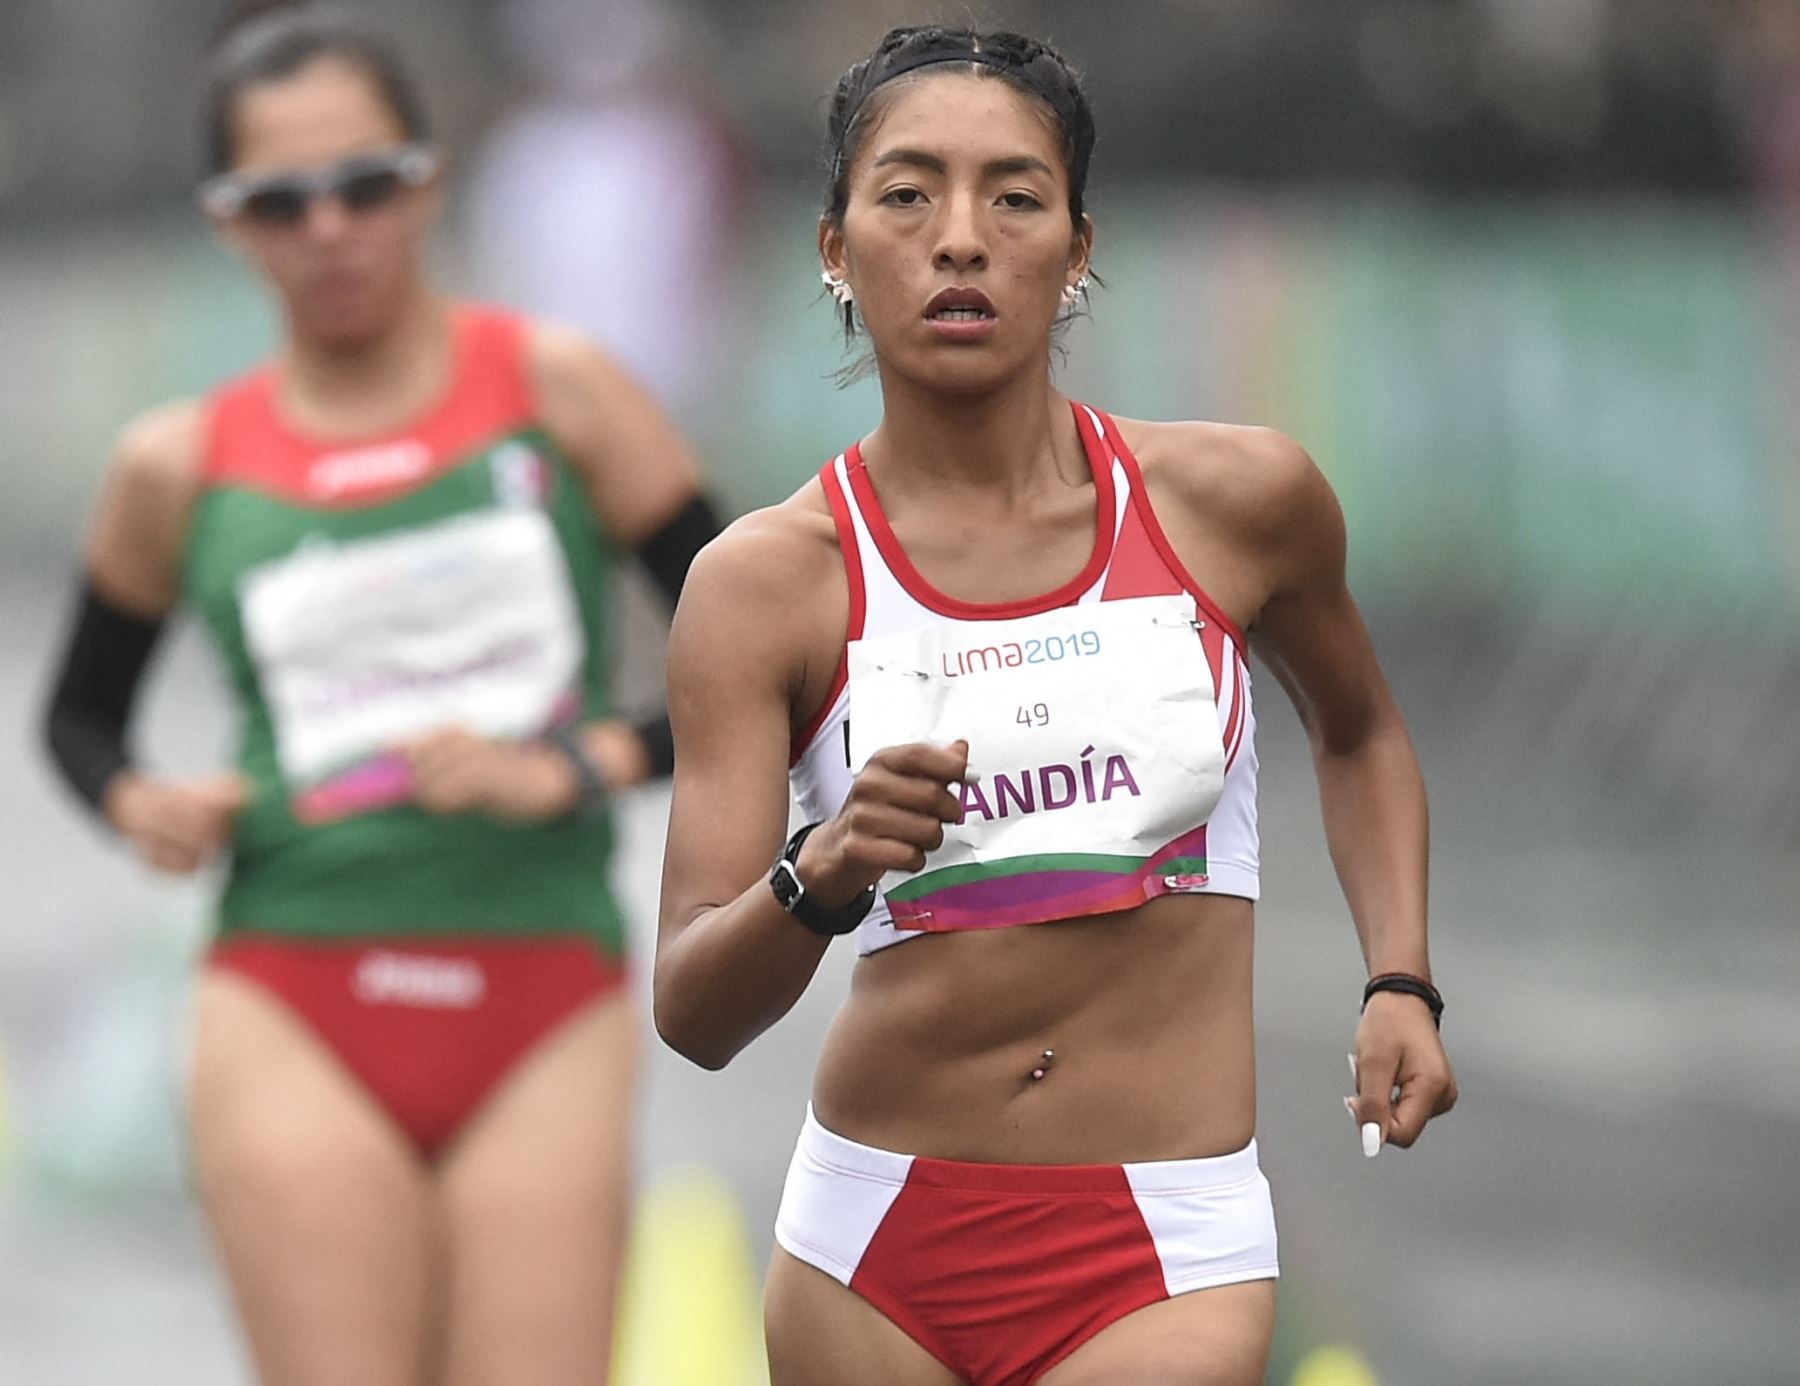 Mary Luz Andia va en busca de la medalla en los Juegos Olímpicos de París 2024